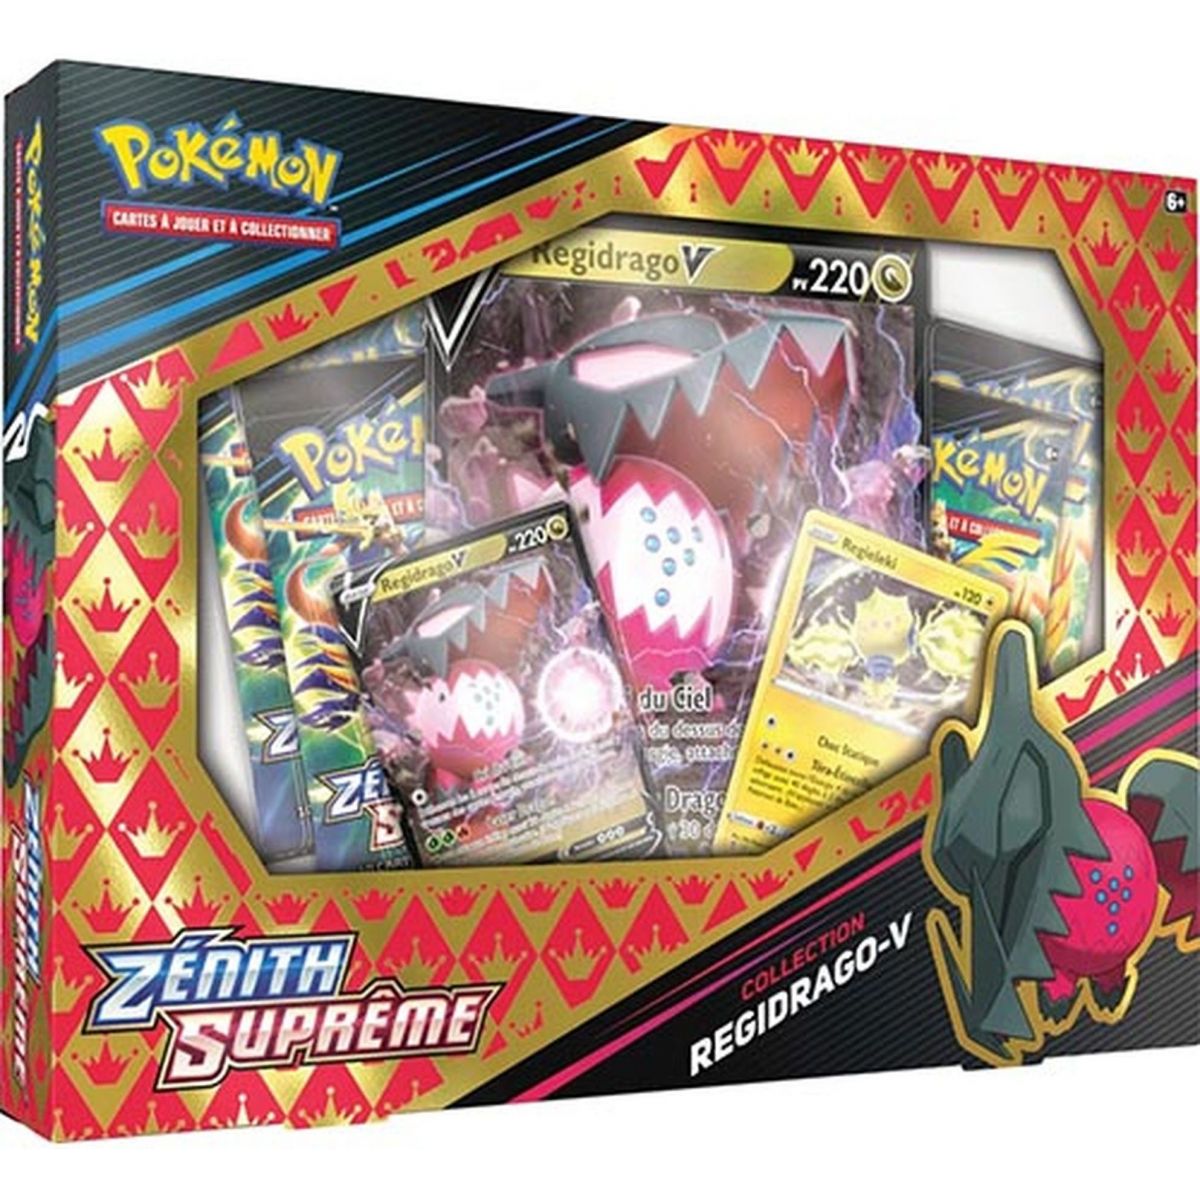 Pokémon - Box - Regidrago V - Zenith Supreme [EB12.5] - FR